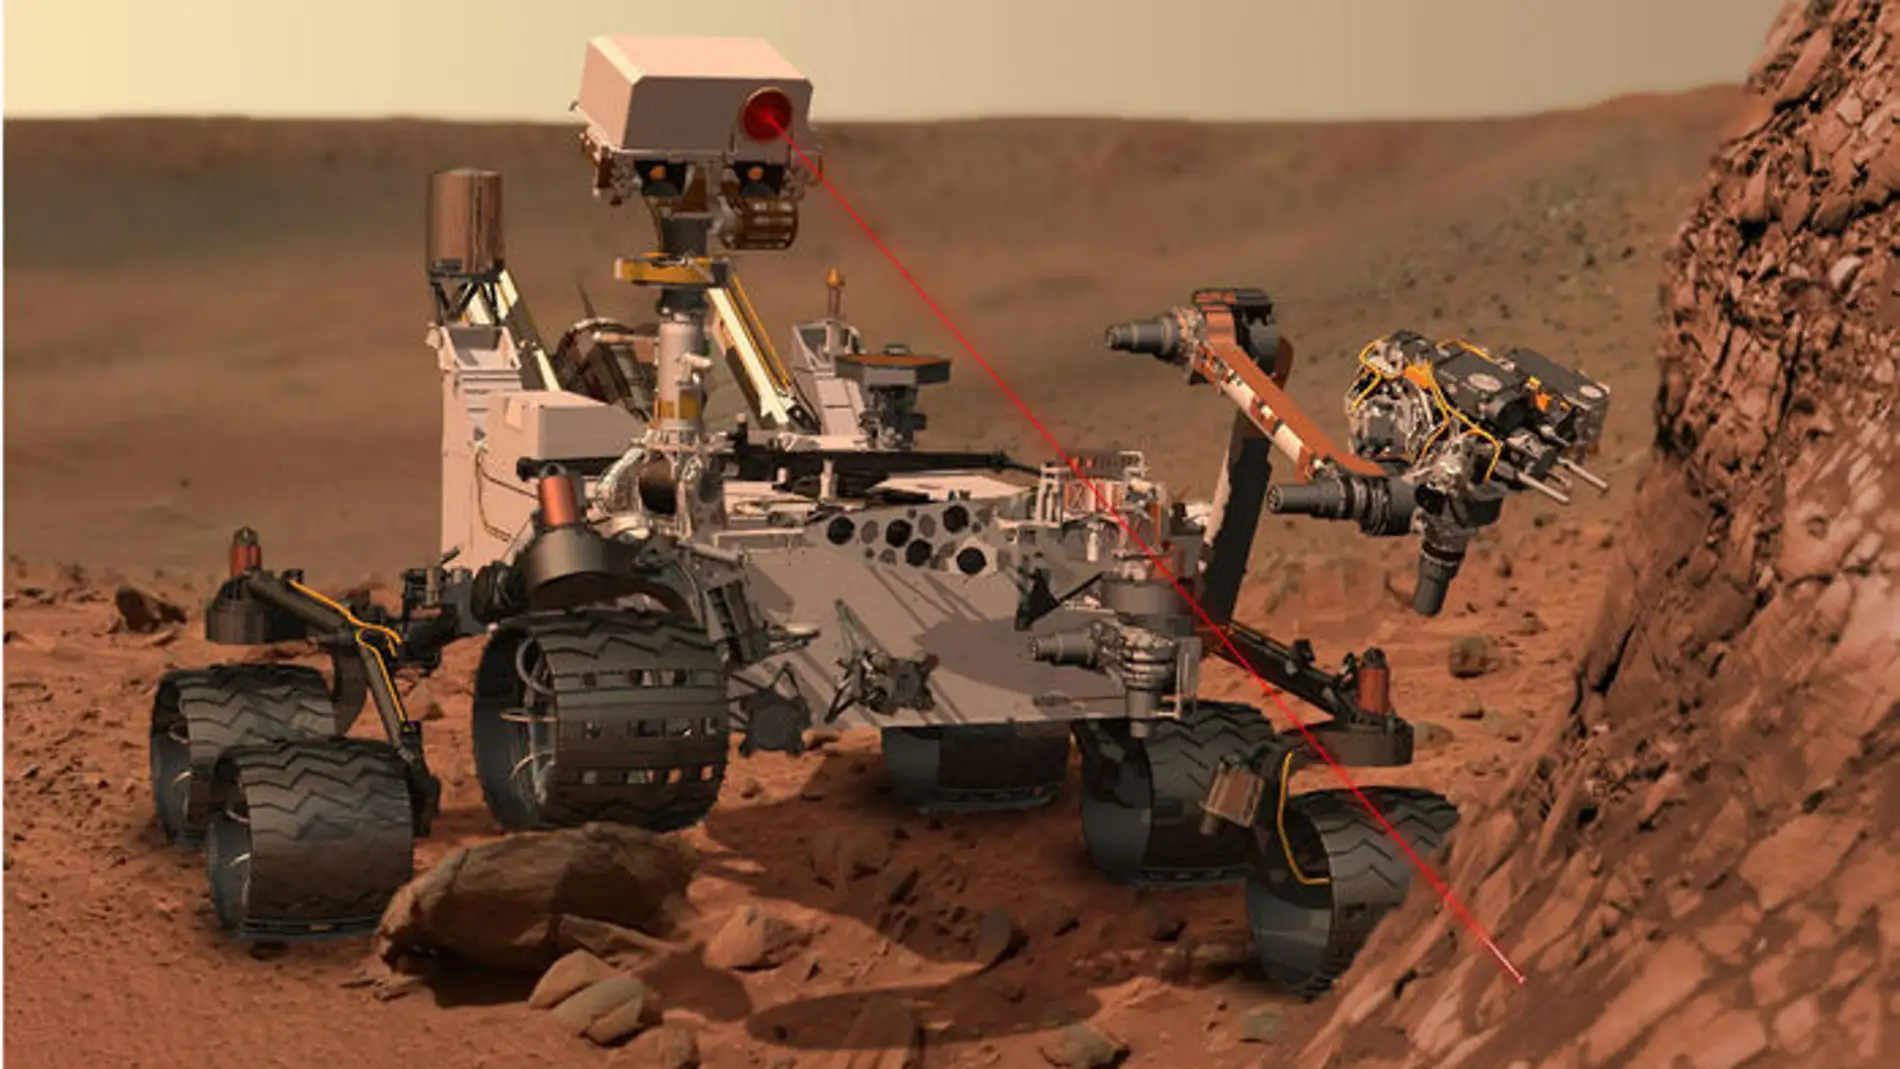 Representación artística del rover Curiosity disparando su rayo láser contra uno de los objetivos